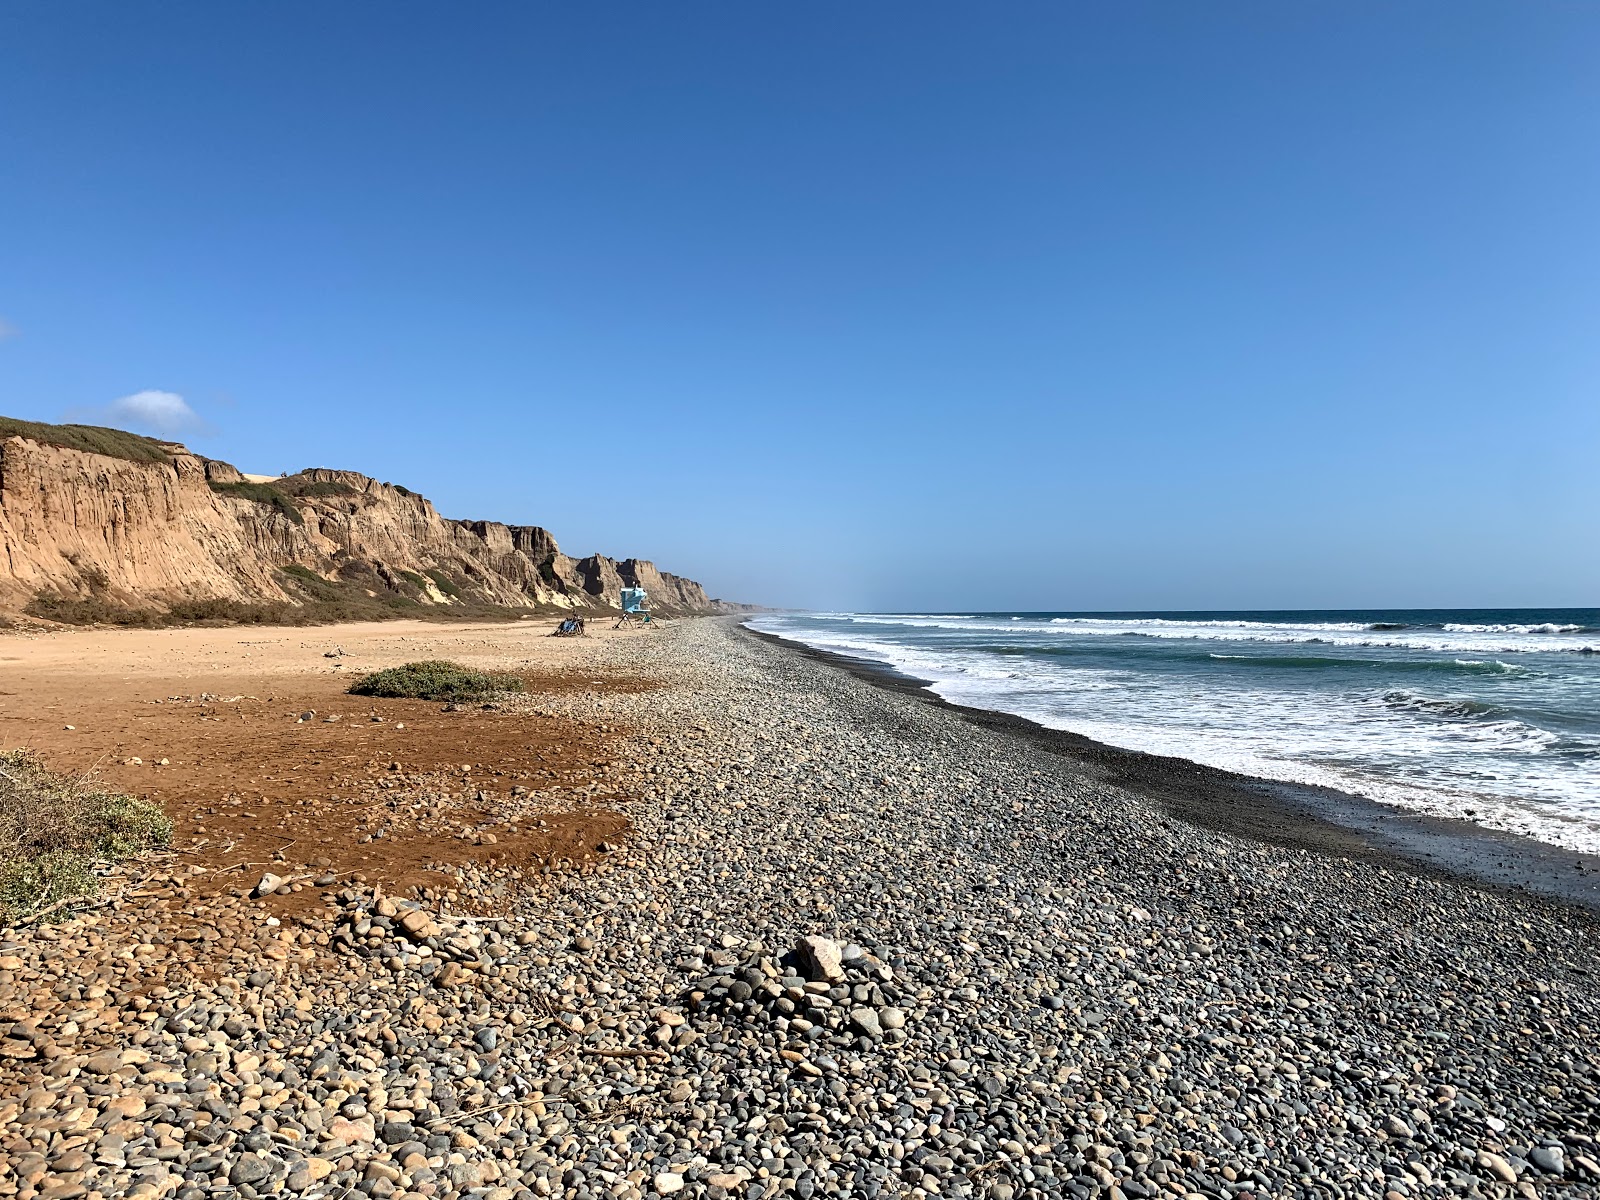 Foto de Gladiator beach com areia clara e seixos superfície